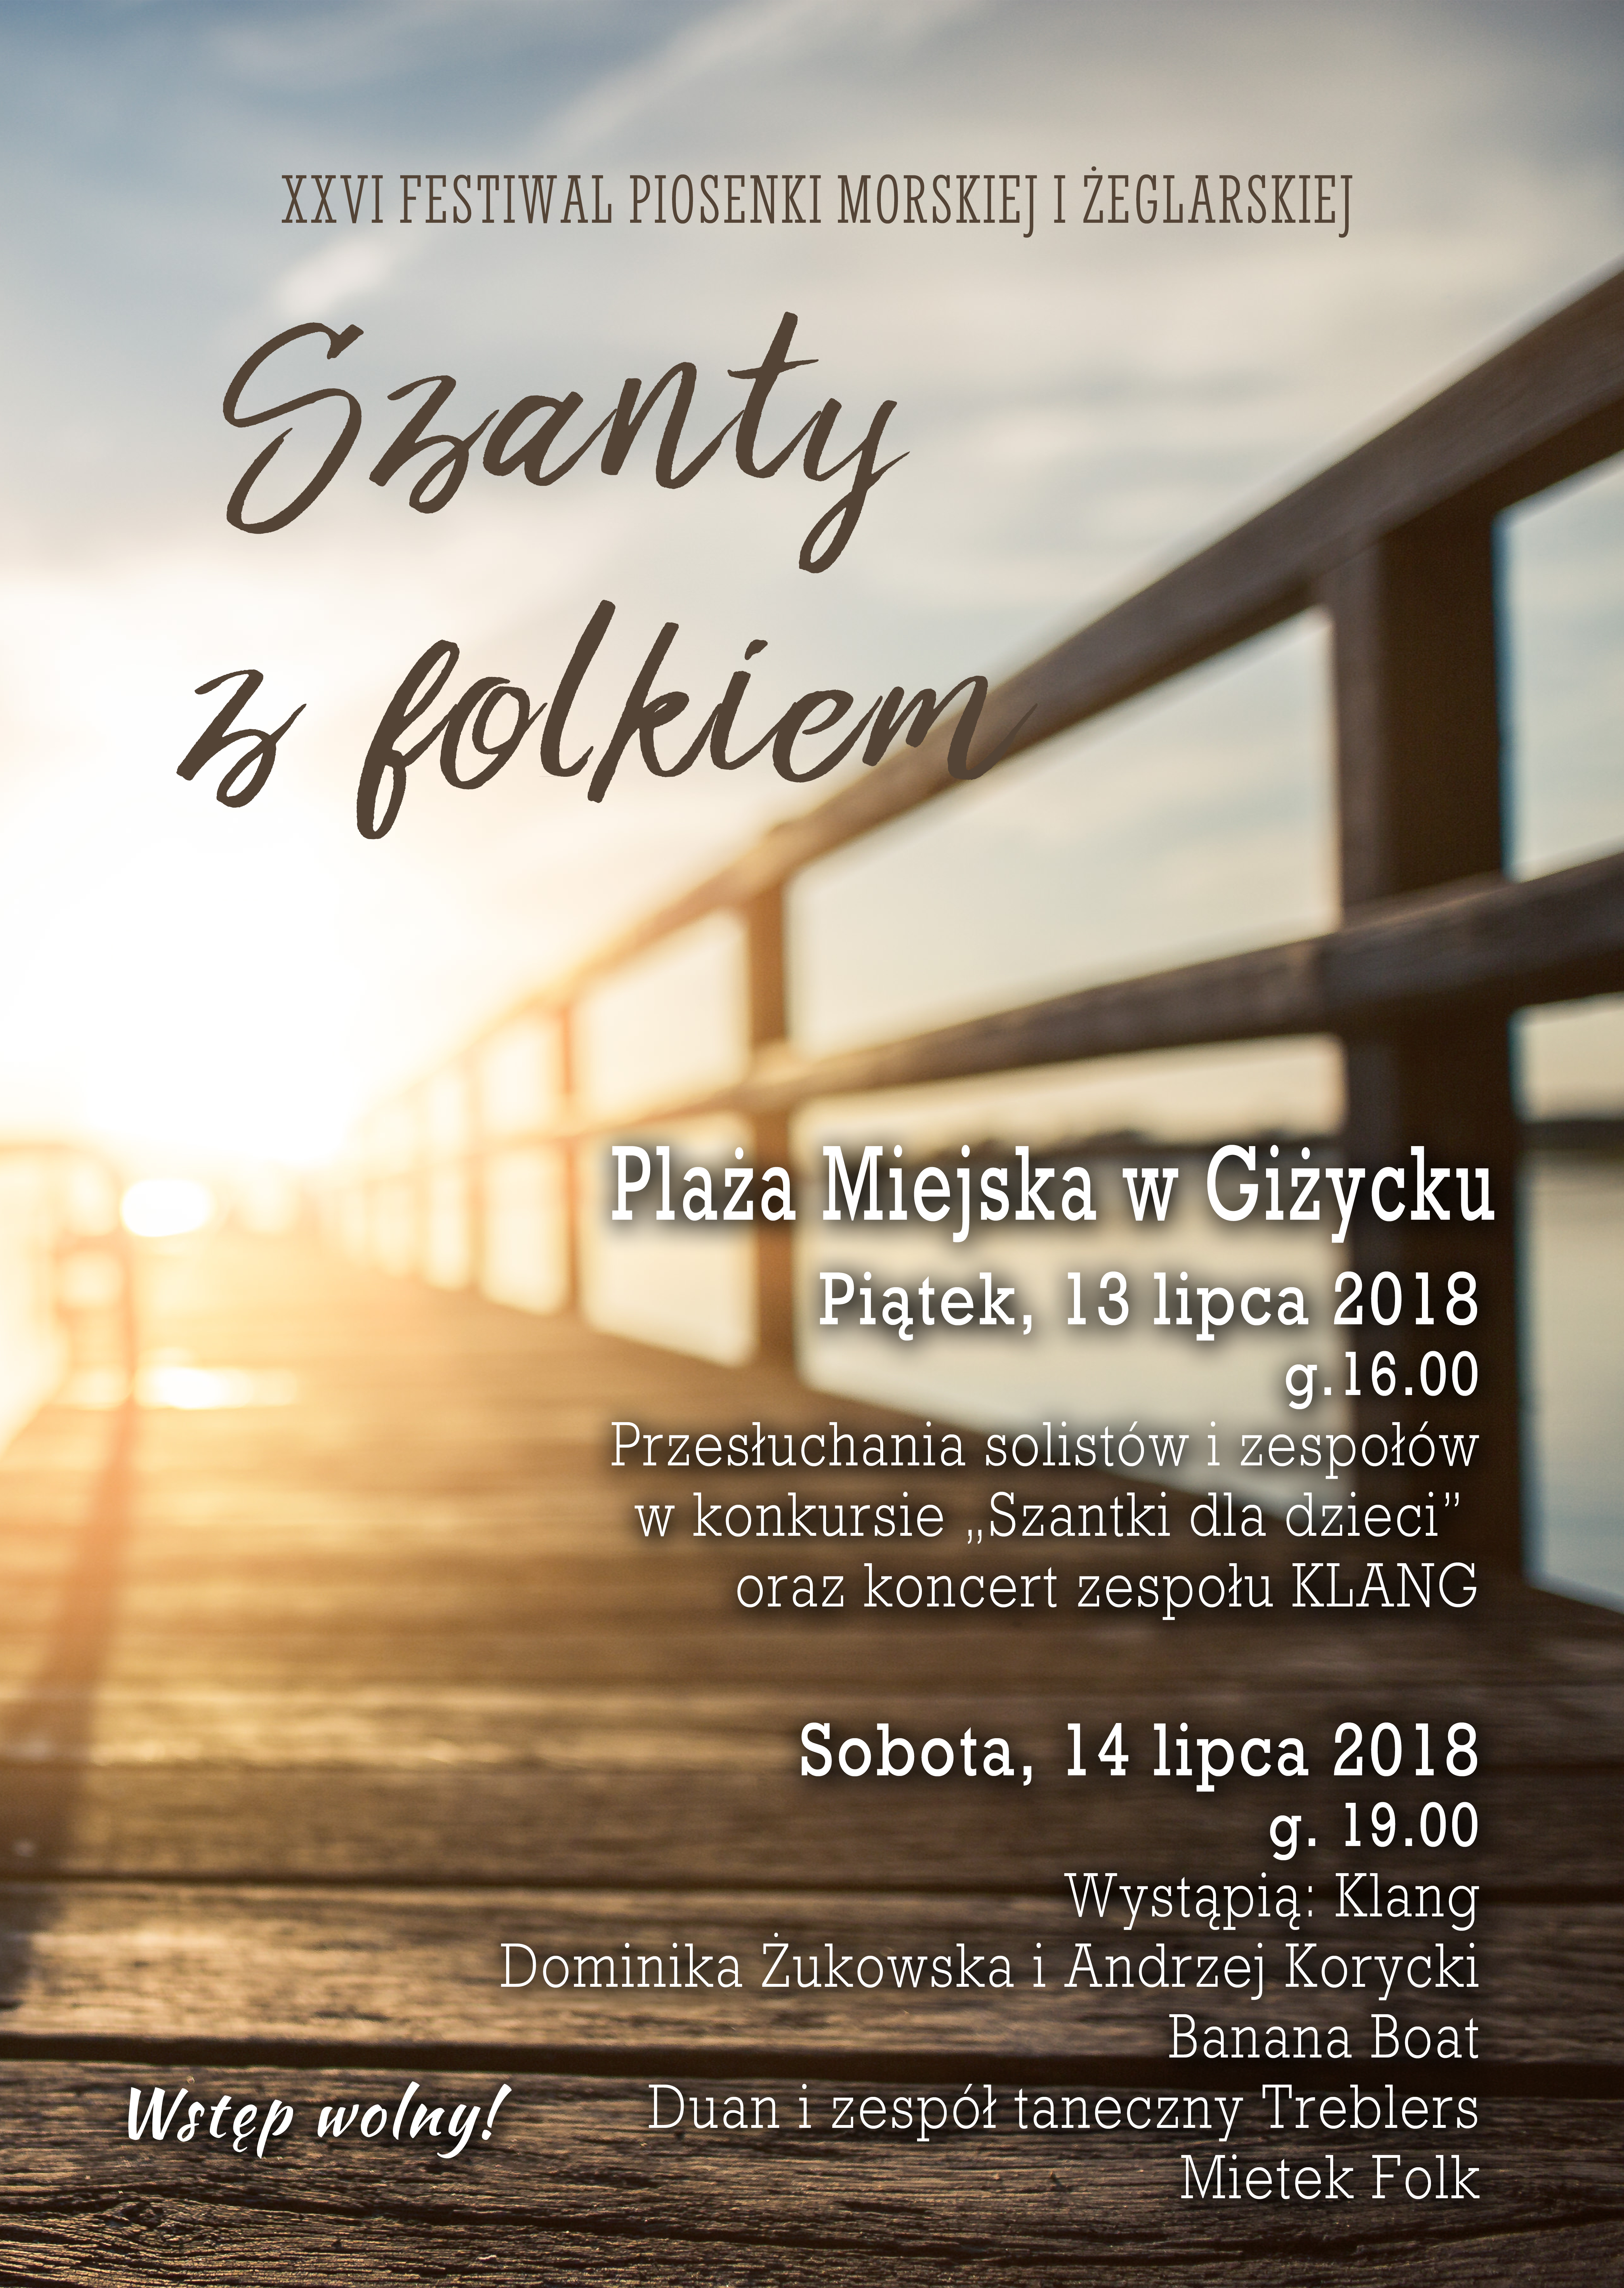 XXVI Festiwal Piosenki Żeglarskiej i Morskiej ”SZANTY Z FOLKIEM"